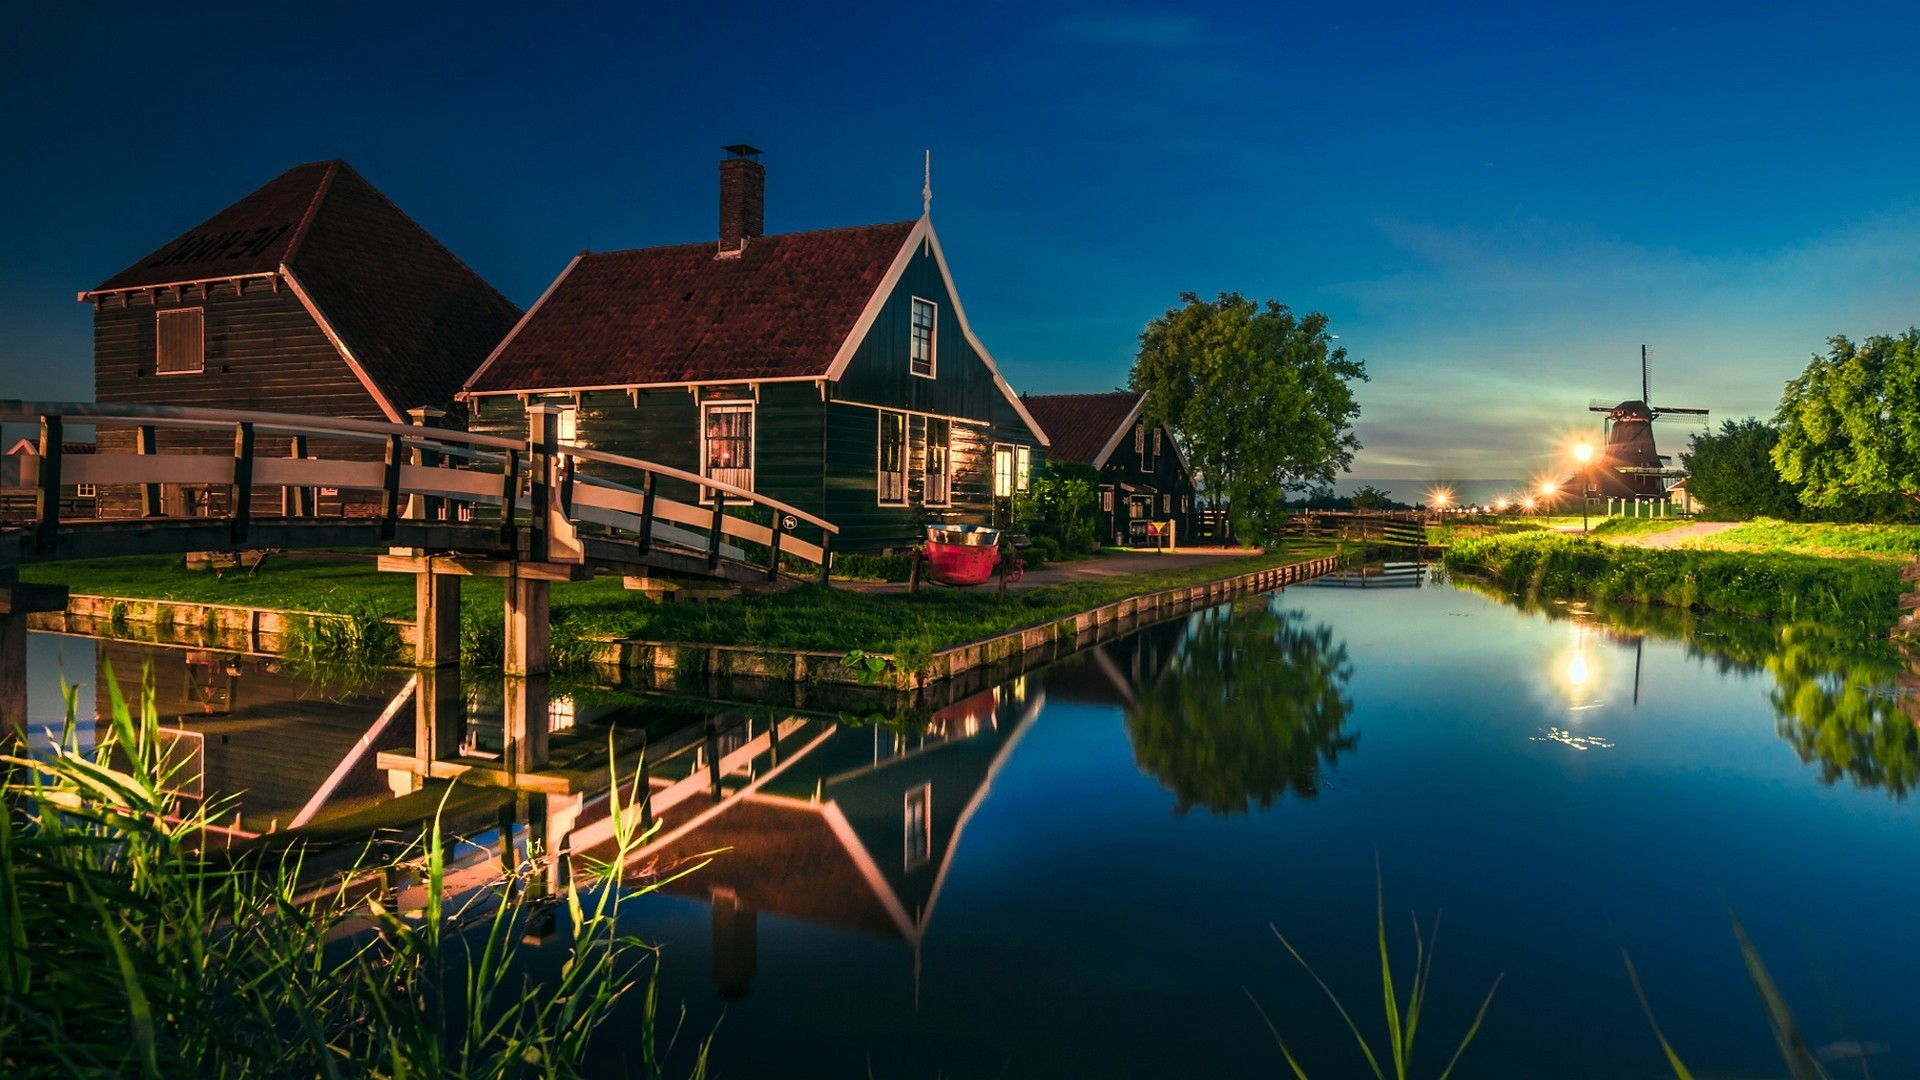 1920x1080 nature, Landscape, Canal, House, Bridge, Water, Lantern, Reflection,  Netherlands, Trees, Grass, Lights, Blue, Europe, Evening, Zaanse Schans  Wallpapers HD ...